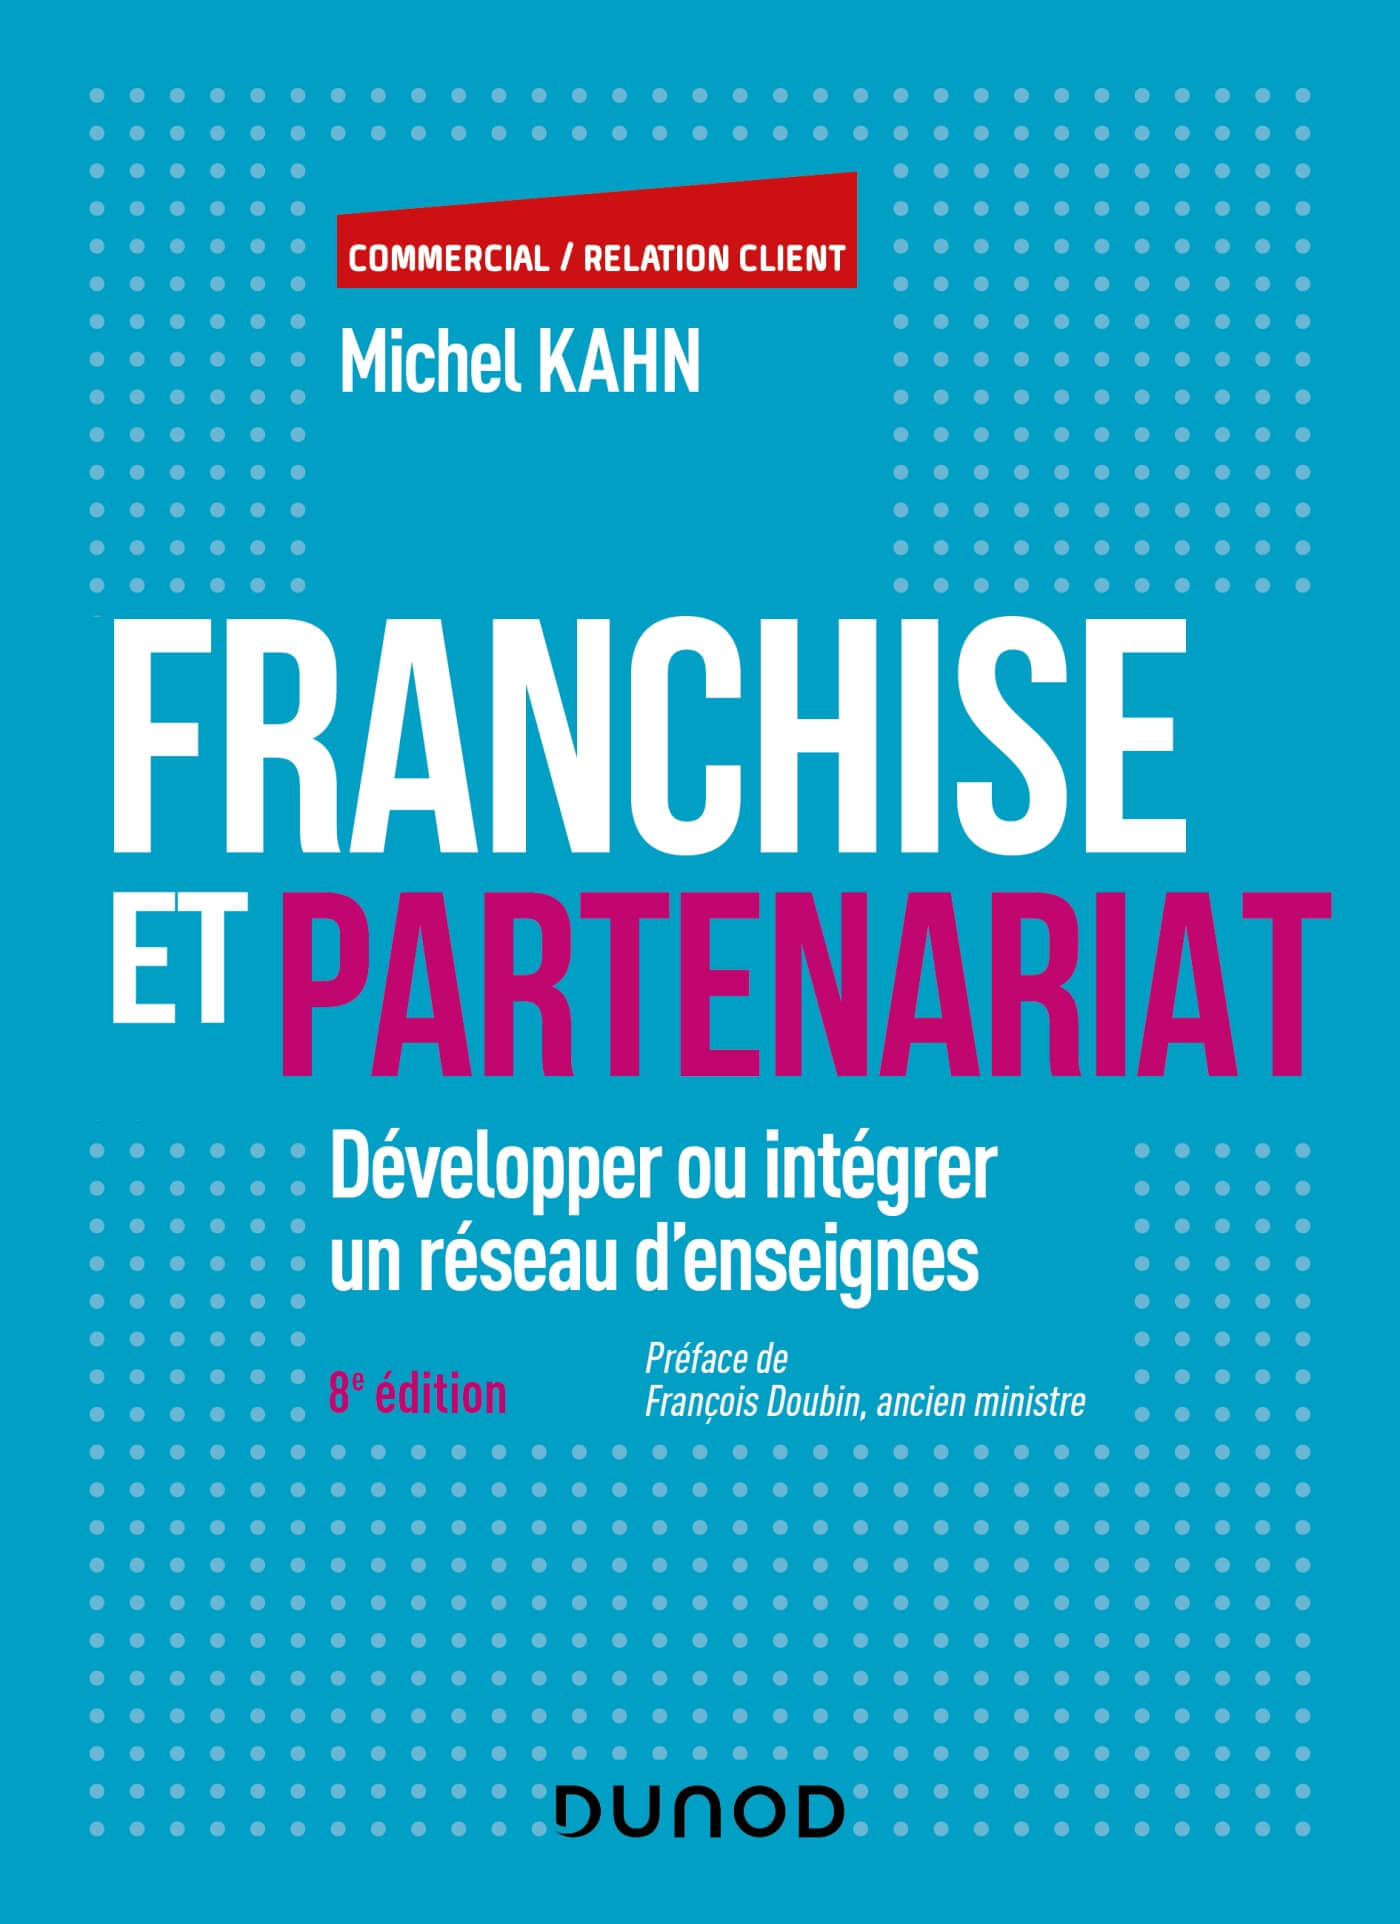 Franchise et partenariat : Développer ou intégrer un réseau d'enseignes par Michel Kahn